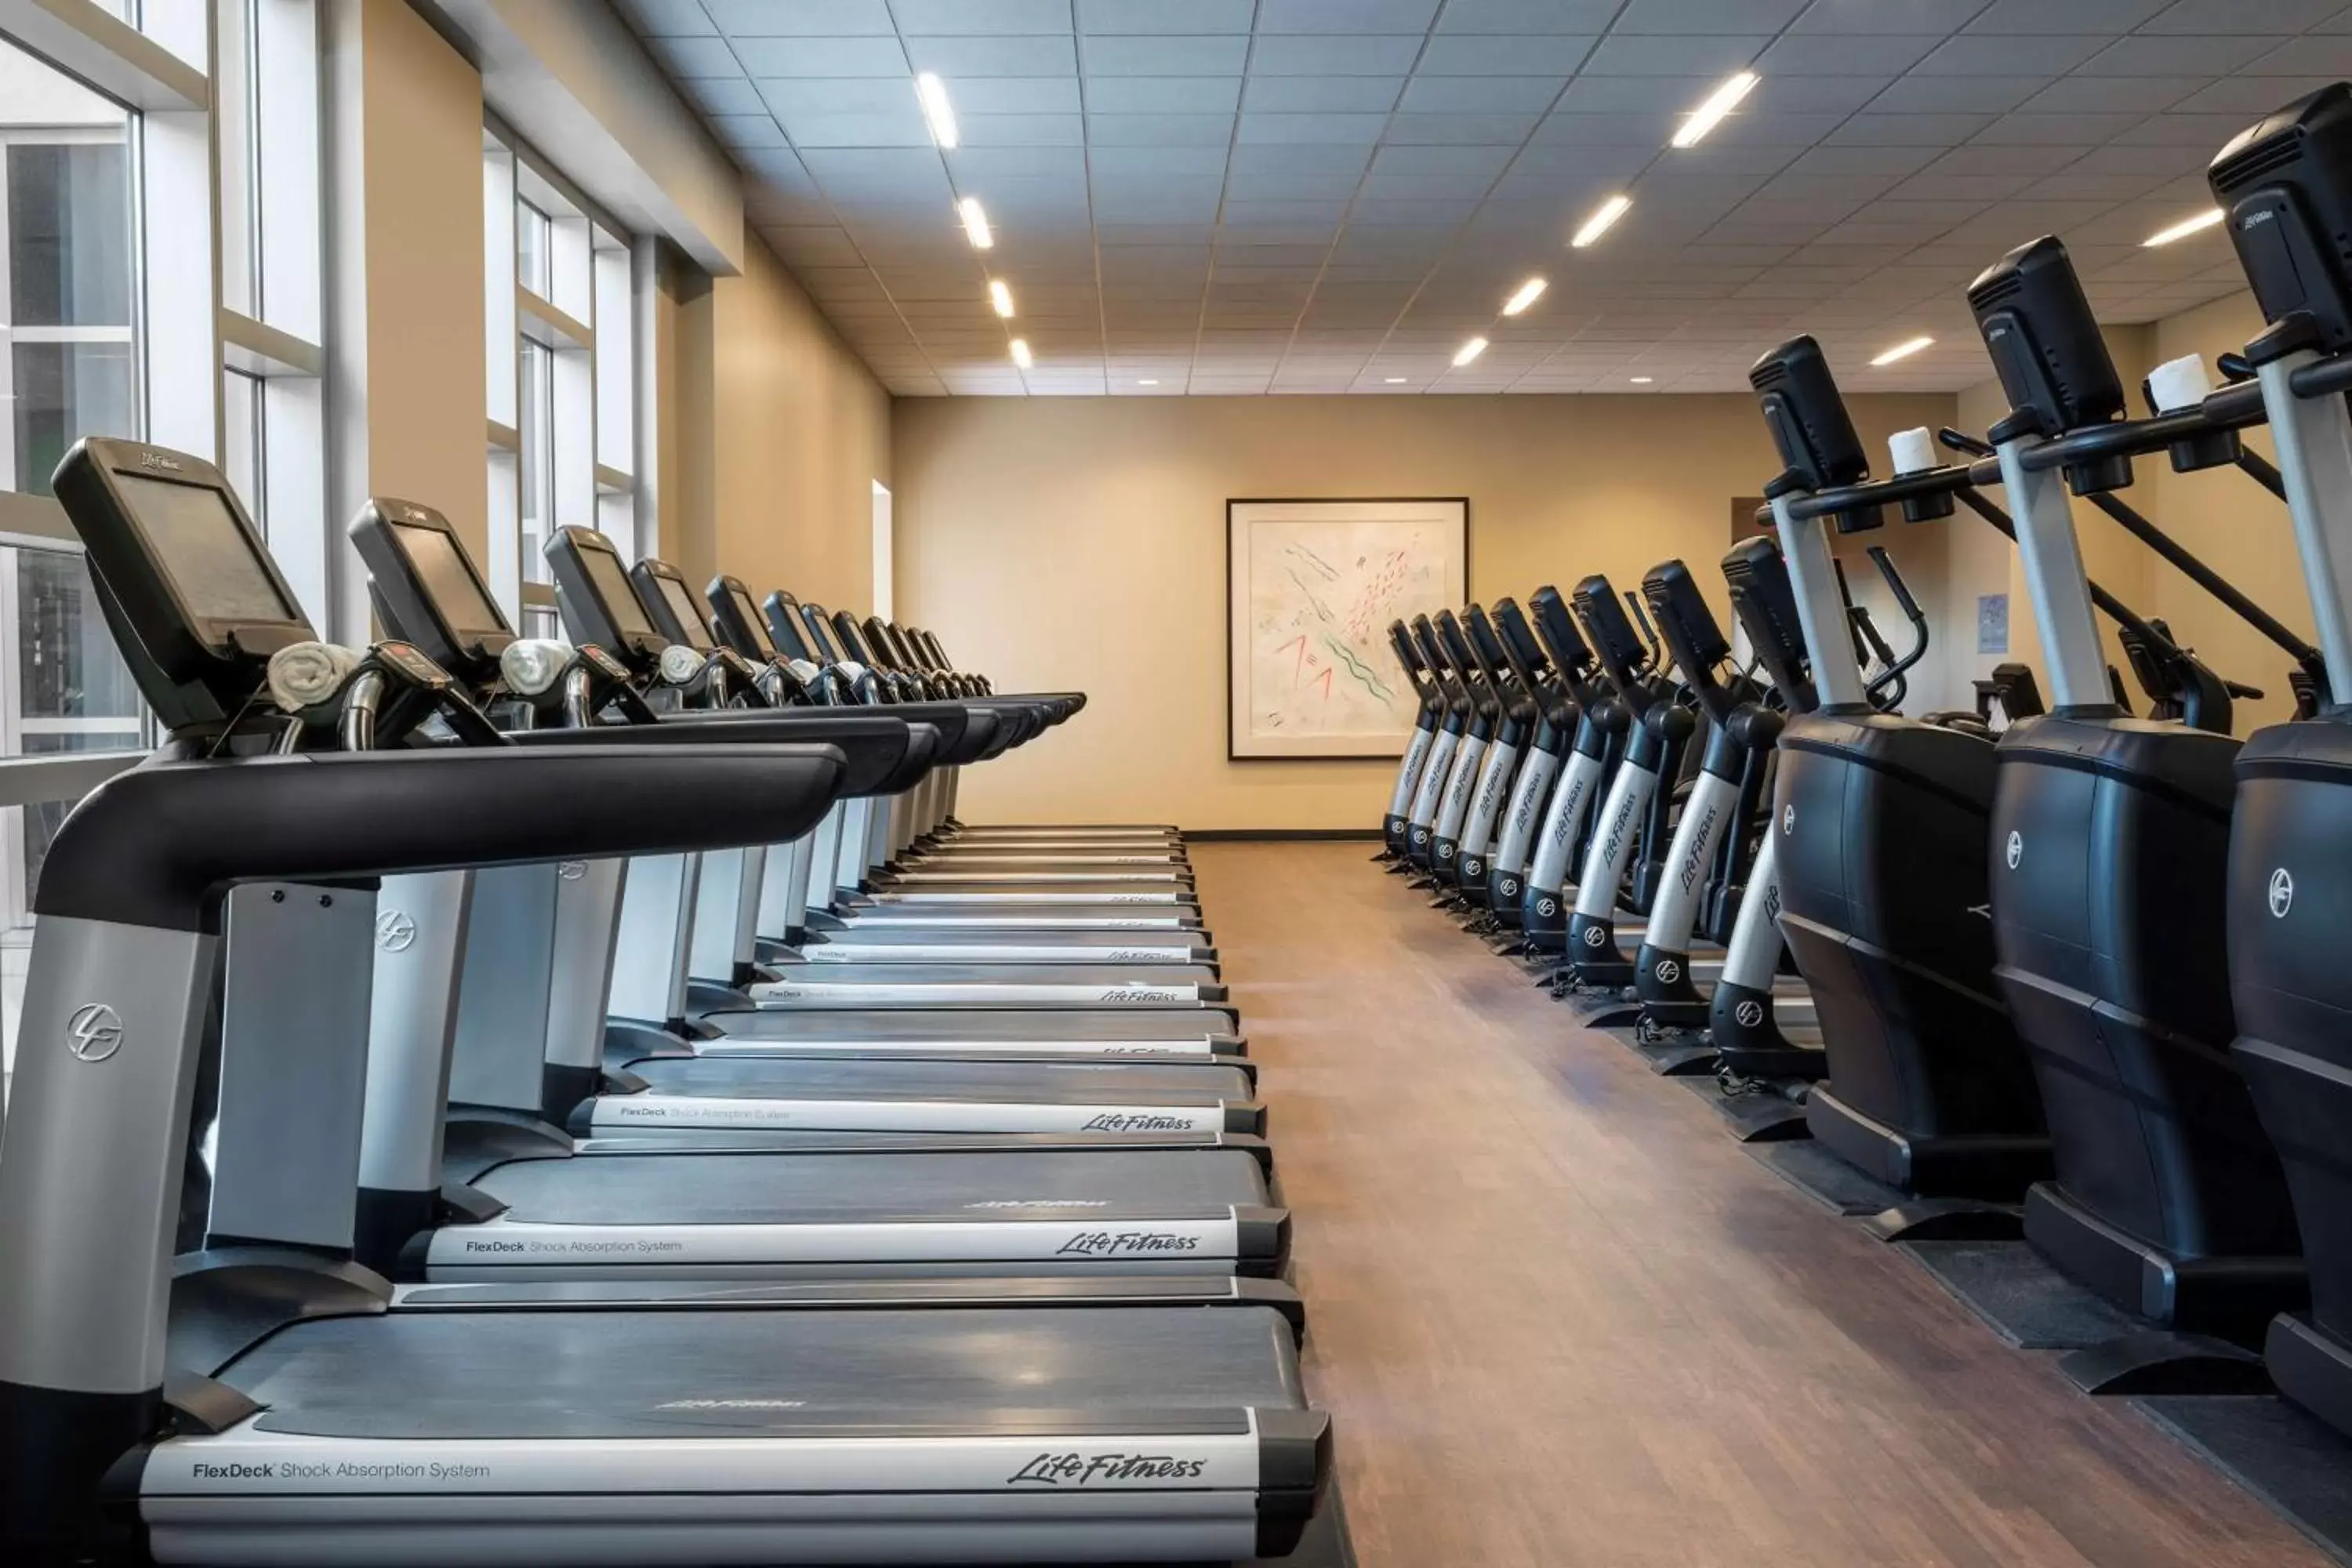 Fitness centre/facilities, Fitness Center/Facilities in Hyatt Regency Orlando